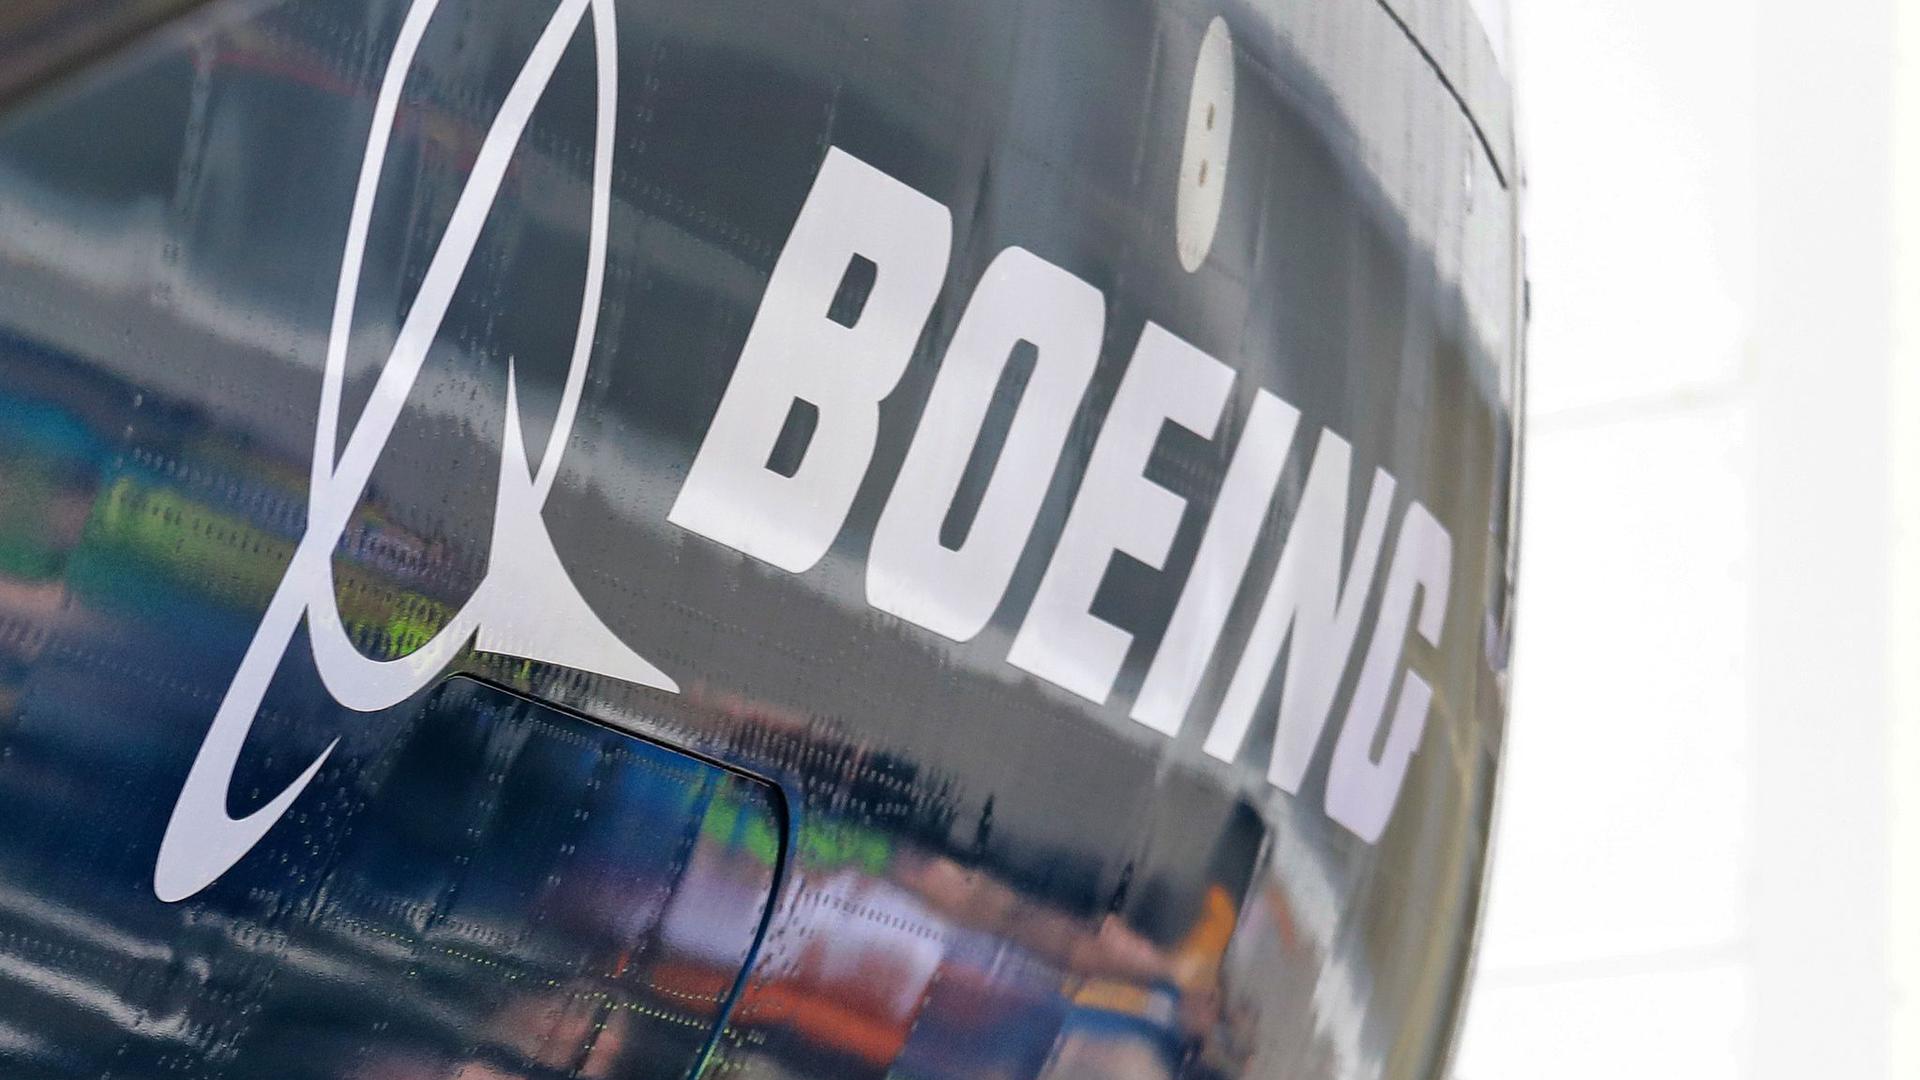 Boeing steckt in der Krise.